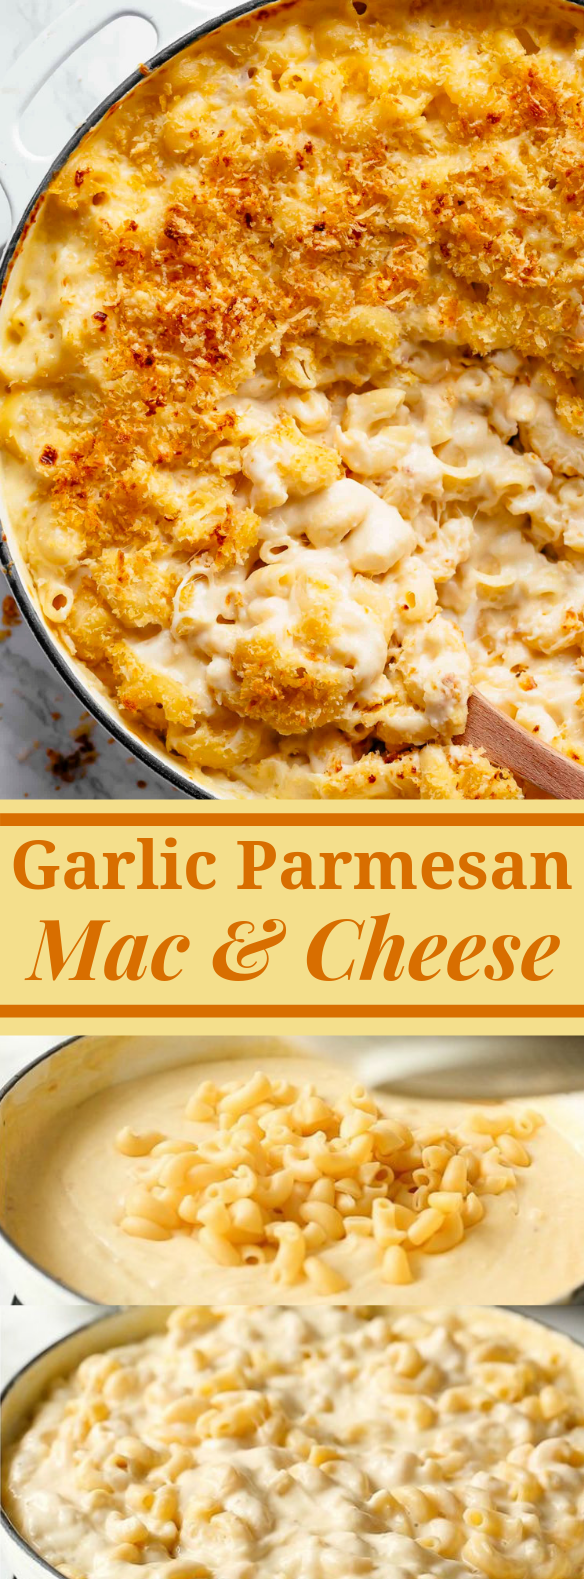 garlic parmesan mac and cheese #Dinner #Pasta